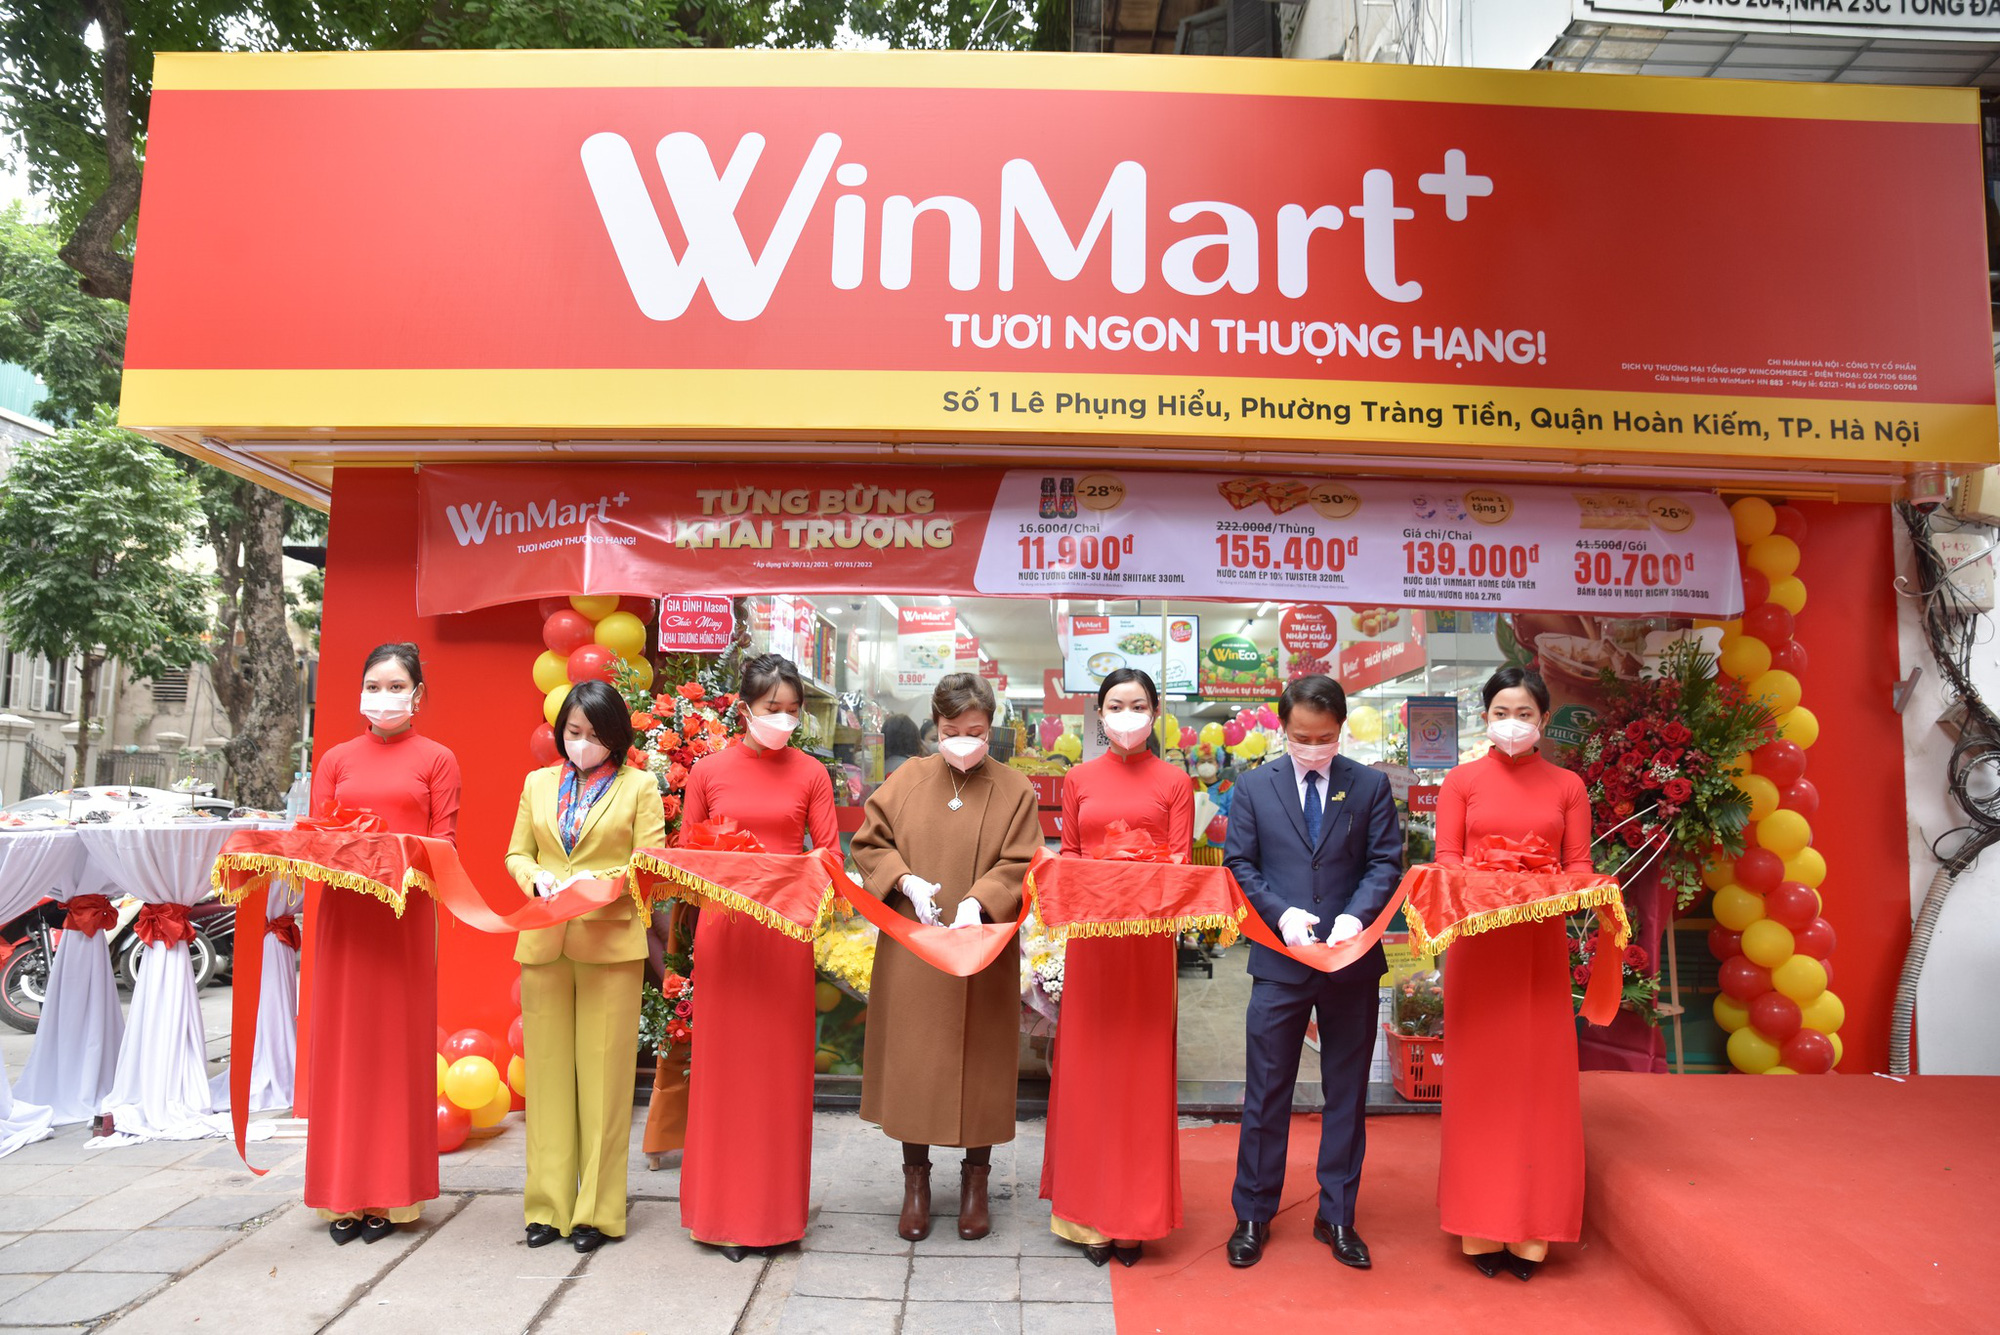 Wincommerce khai trương cửa hàng WinMart+ nhượng quyền đầu tiên - Ảnh 1.